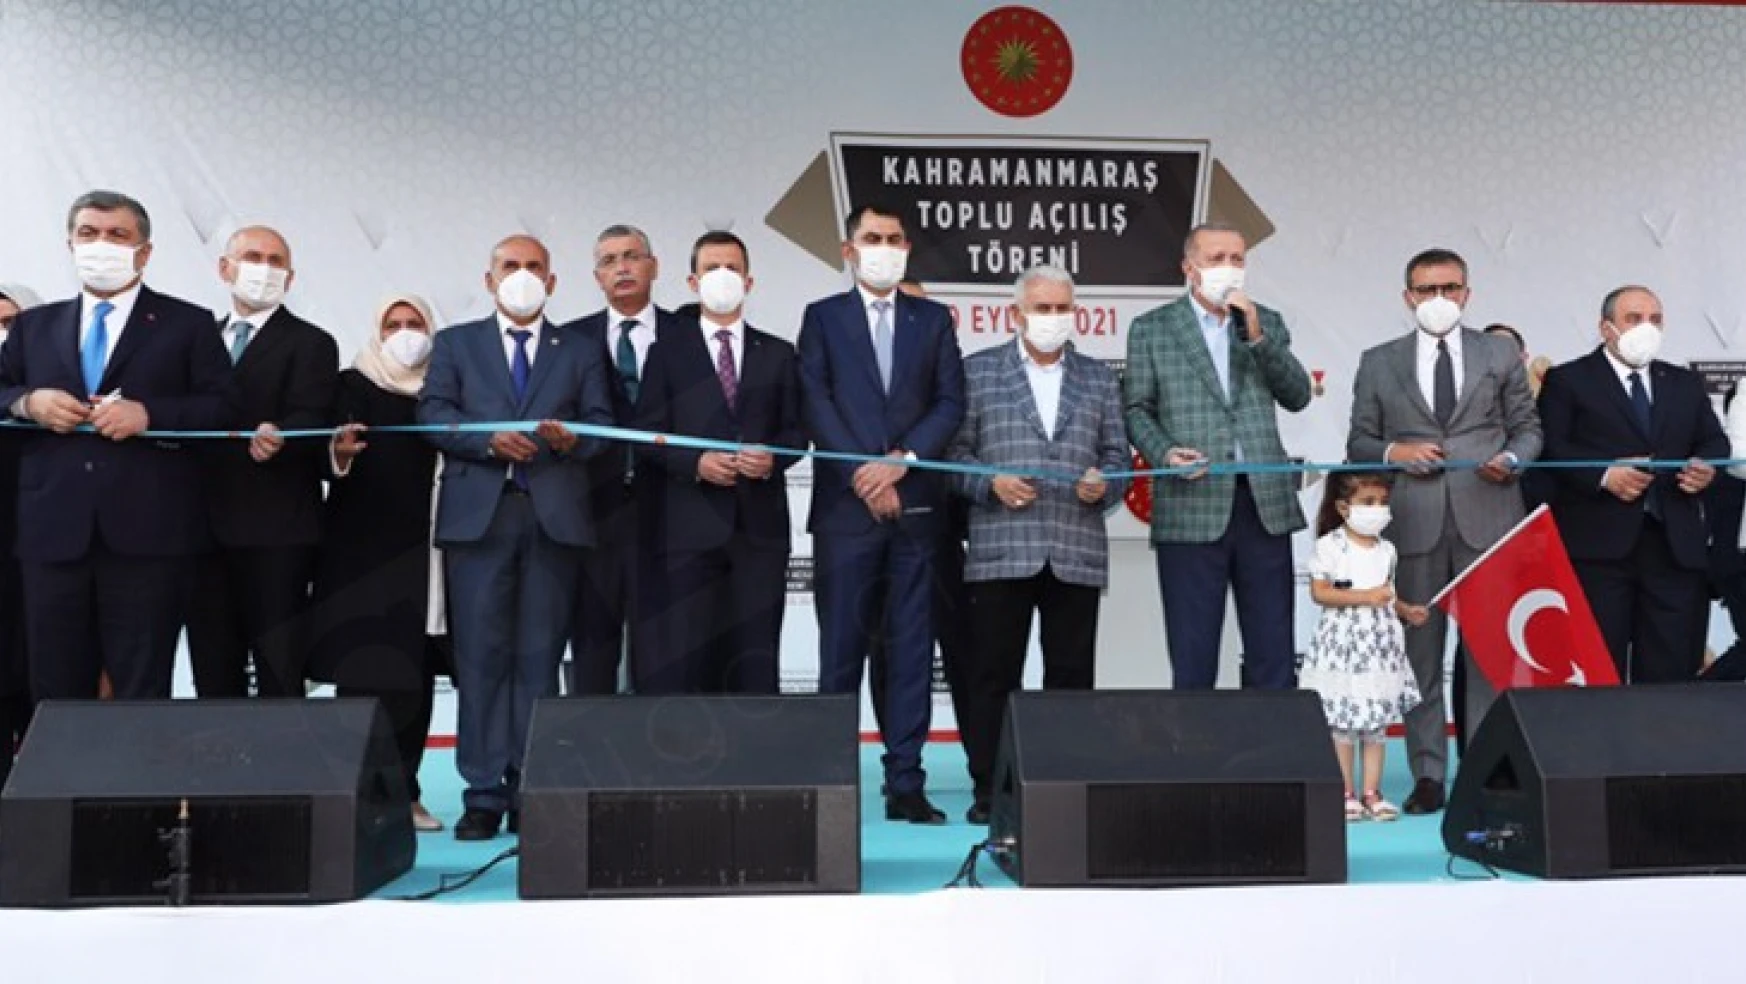 Sağlık Bakanı Dr. Fahrettin Koca, Kahramanmaraş'ta konuştu: Birlikteliği en iyi Maraşlılar bilir